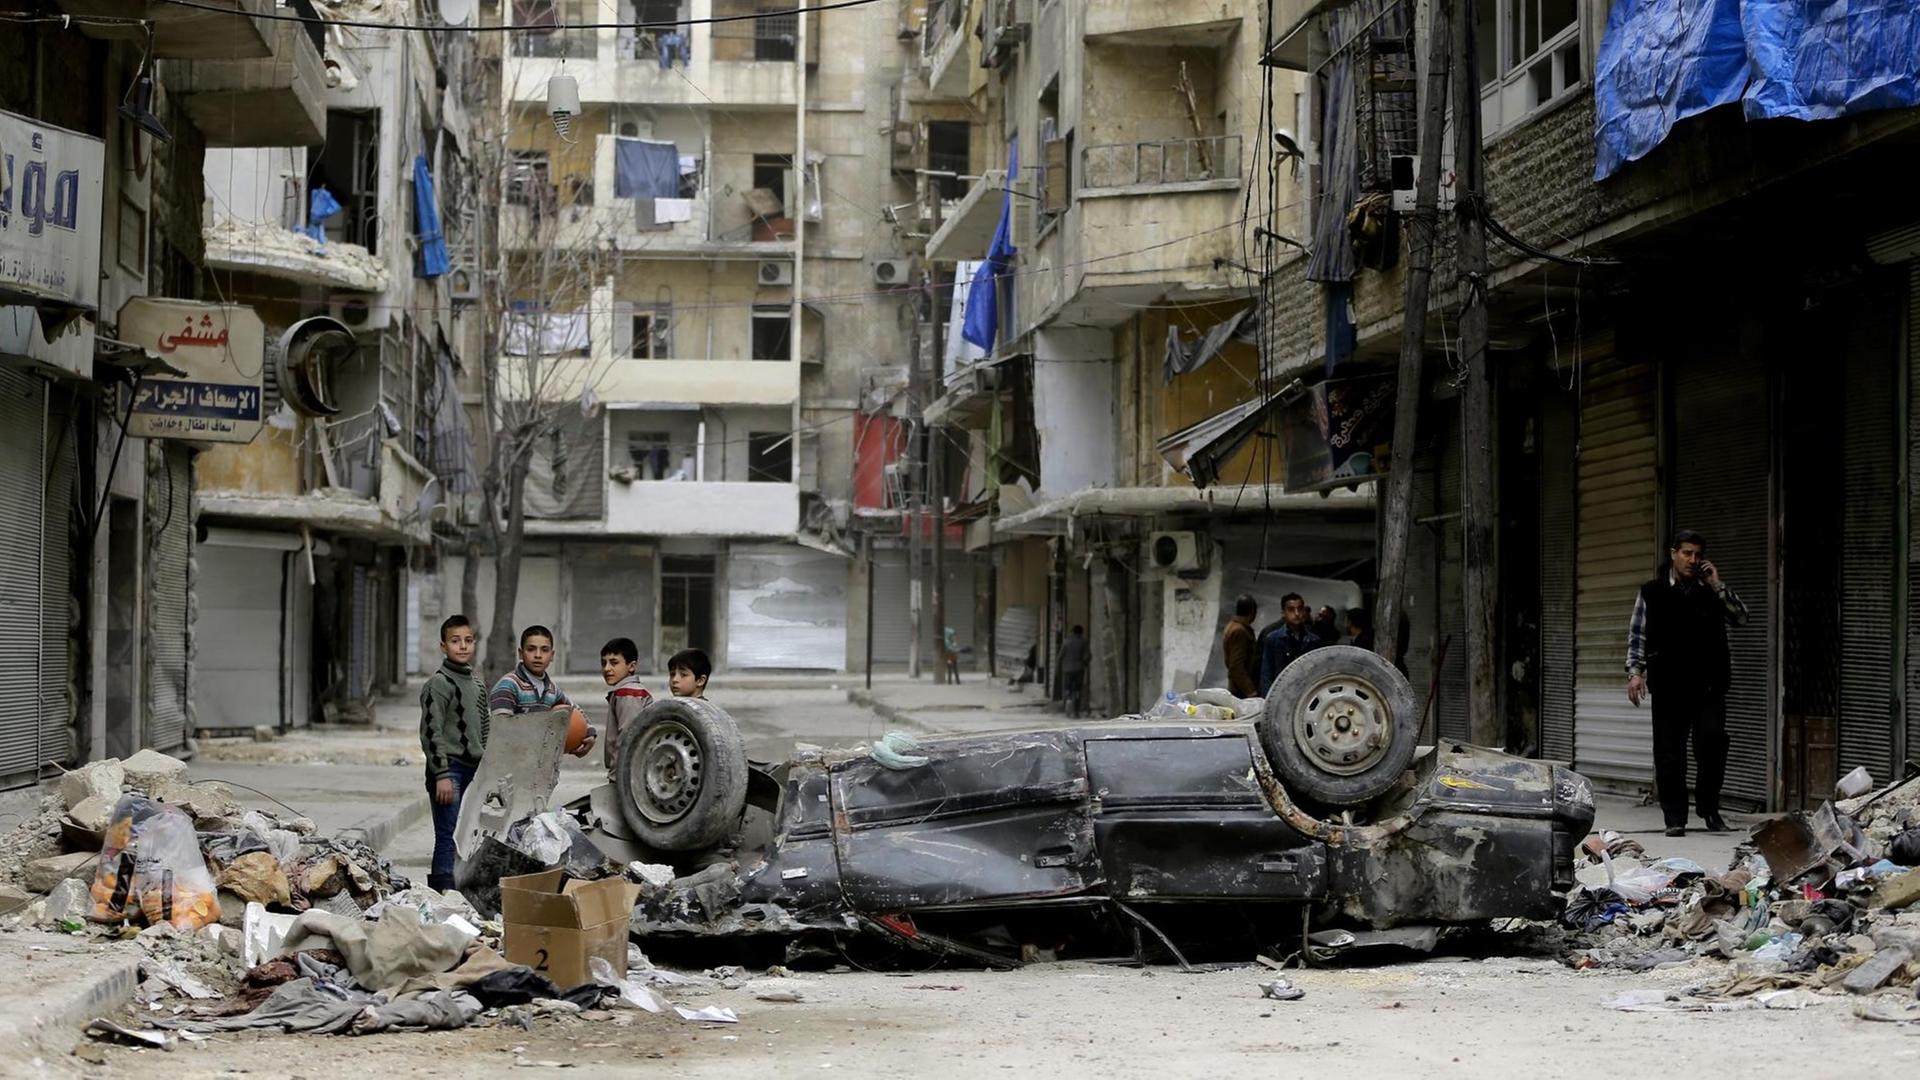 Kinder spielen in einem ehemals von Rebellen gehaltenen Stadtteil von Aleppo zwischen zerstörten Häusern und hinter einem Auto, das auf dem Dach liegt.